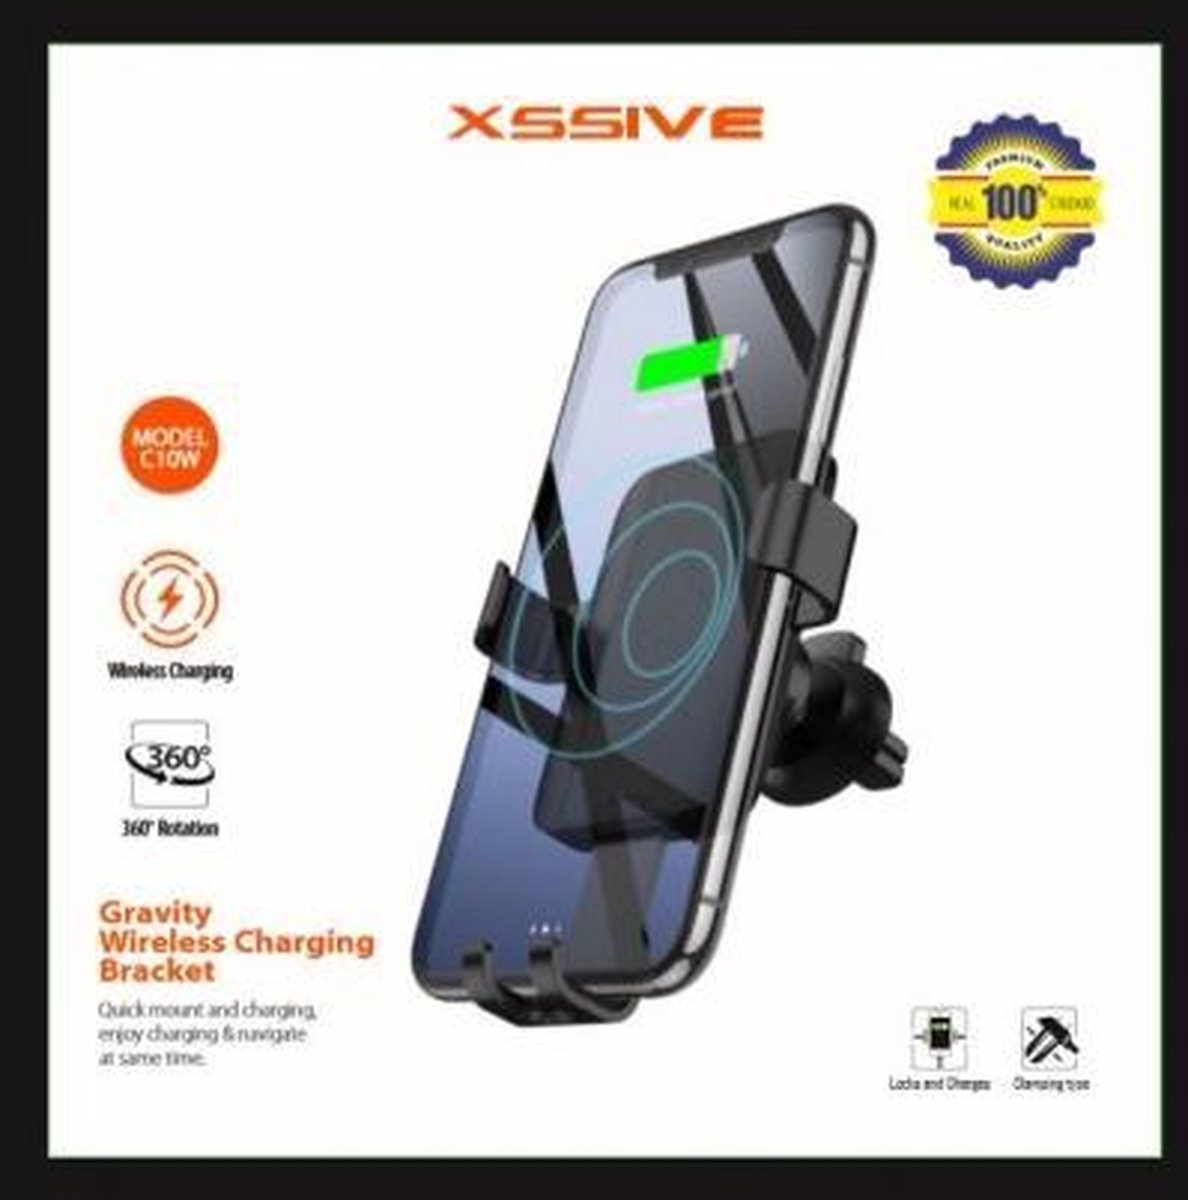 xssive gravity wireless charging bracket